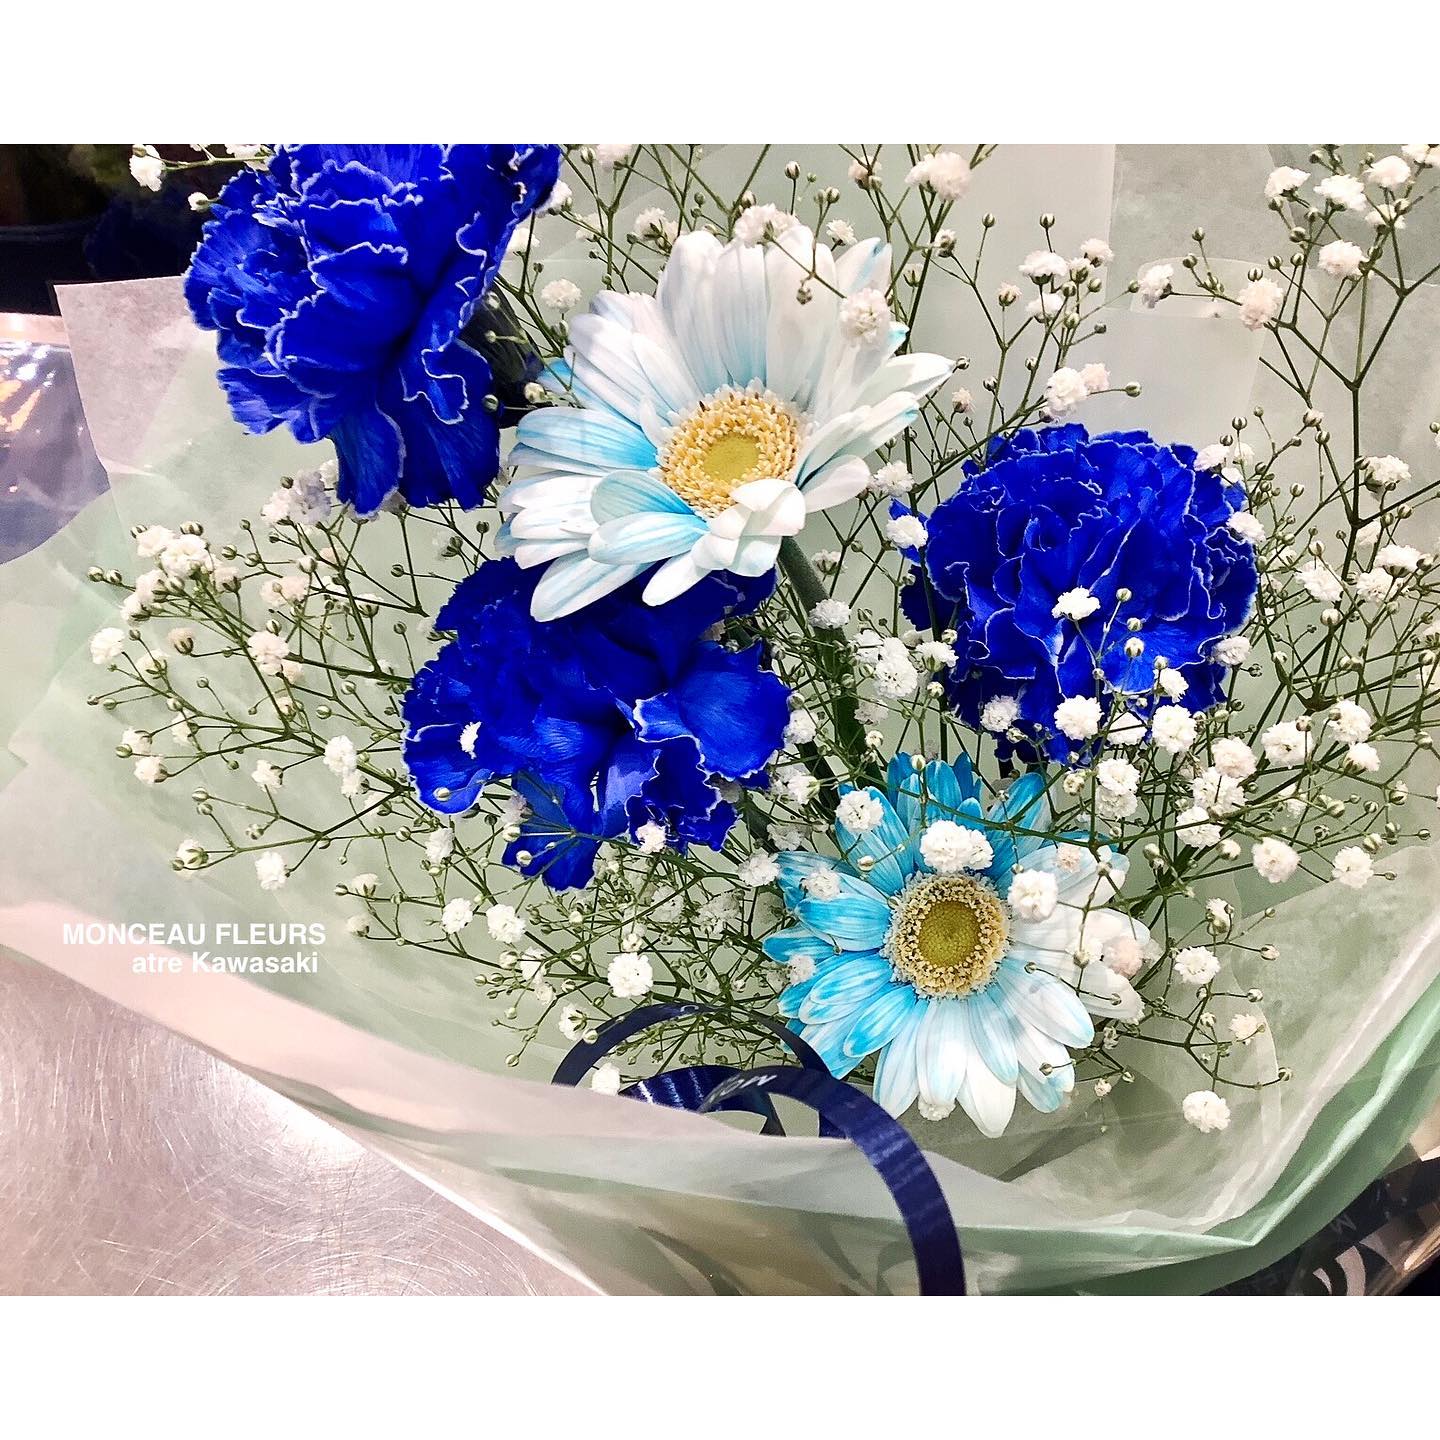 #染め×染めの #コンビネーション！

の"ガーベラ"
　　　　　　　×
の 
・

には、
たまりません^ ^♪

可愛らしい のお花とも
ですよね！！

・

他にも店頭には"青い花"が色々

人気色につき、
常時いろいろな種類を置けるように頑張っていますよ！

"青い花"をお探しの方は、是非！
当店までご相談下さいね^ ^

・
・
・

今週末、9日・10日・11日と
開催中♪

・

スタッフ一同、
店頭でお待ちしております^ ^

・
・
・

受付中♪

・

#敬老祝いのお花、
お申し込みはもうお済みですか？？

"敬老の日"当日到着の受付数には
数に限りがございます

お早目のご注文をお願い致します^ ^

・




・

お気軽にお問い合わせください。
★★★★★★★★★★★★★★★
【モンソーフルール アトレ川崎店】
〒210-0007
神奈川県川崎市川崎区駅前本町26-1
アトレ川崎1F
TEL&FAX:044-200-6701
営業時間:10:00〜21:00
★★★★★★★★★★★★★★★
モンソーフルールはパリ発！
ヨーロッパ有数のフラワーチェーンブランドです。

・

∞∞∞∞∞∞∞∞∞∞∞∞∞∞∞∞∞∞∞
スタッフ募集中
経験者優遇　未経験者歓迎
下記の宛先まで、履歴書をご送付下さい。

〒230-0051 
神奈川県横浜市鶴見区鶴見中央1-17-5
正木屋ビル1Ｆ
株式会社花芳商店
モンソーフルールアトレ川崎店
採用担当係宛
∞∞∞∞∞∞∞∞∞∞∞∞∞∞∞∞∞∞∞

・